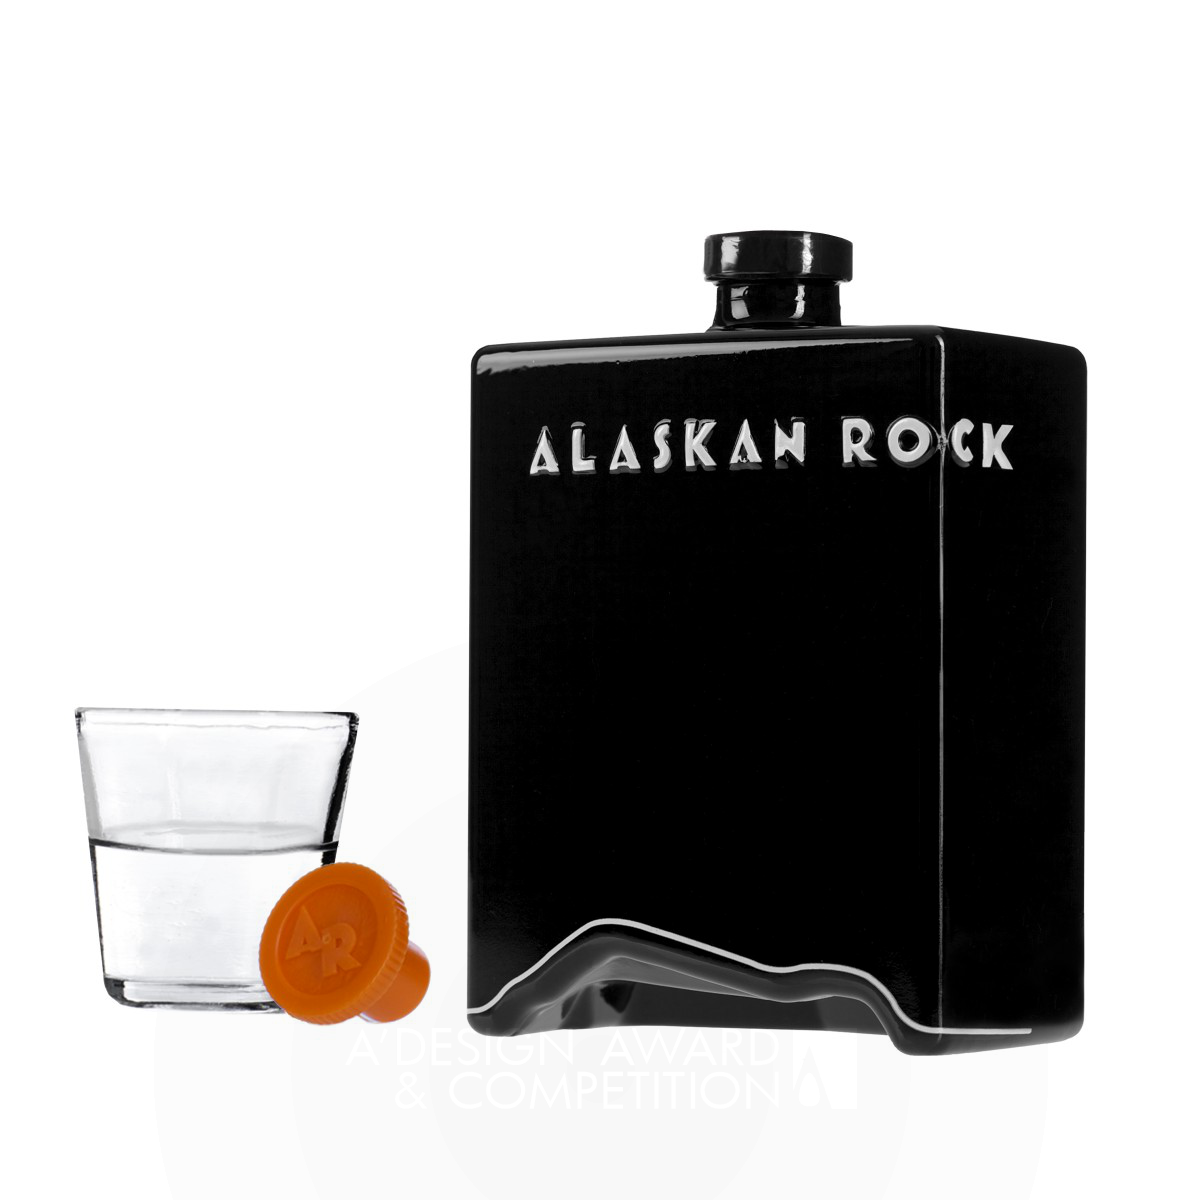 Alaskan Rock Vodka by Alaskan Rock Pty Ltd